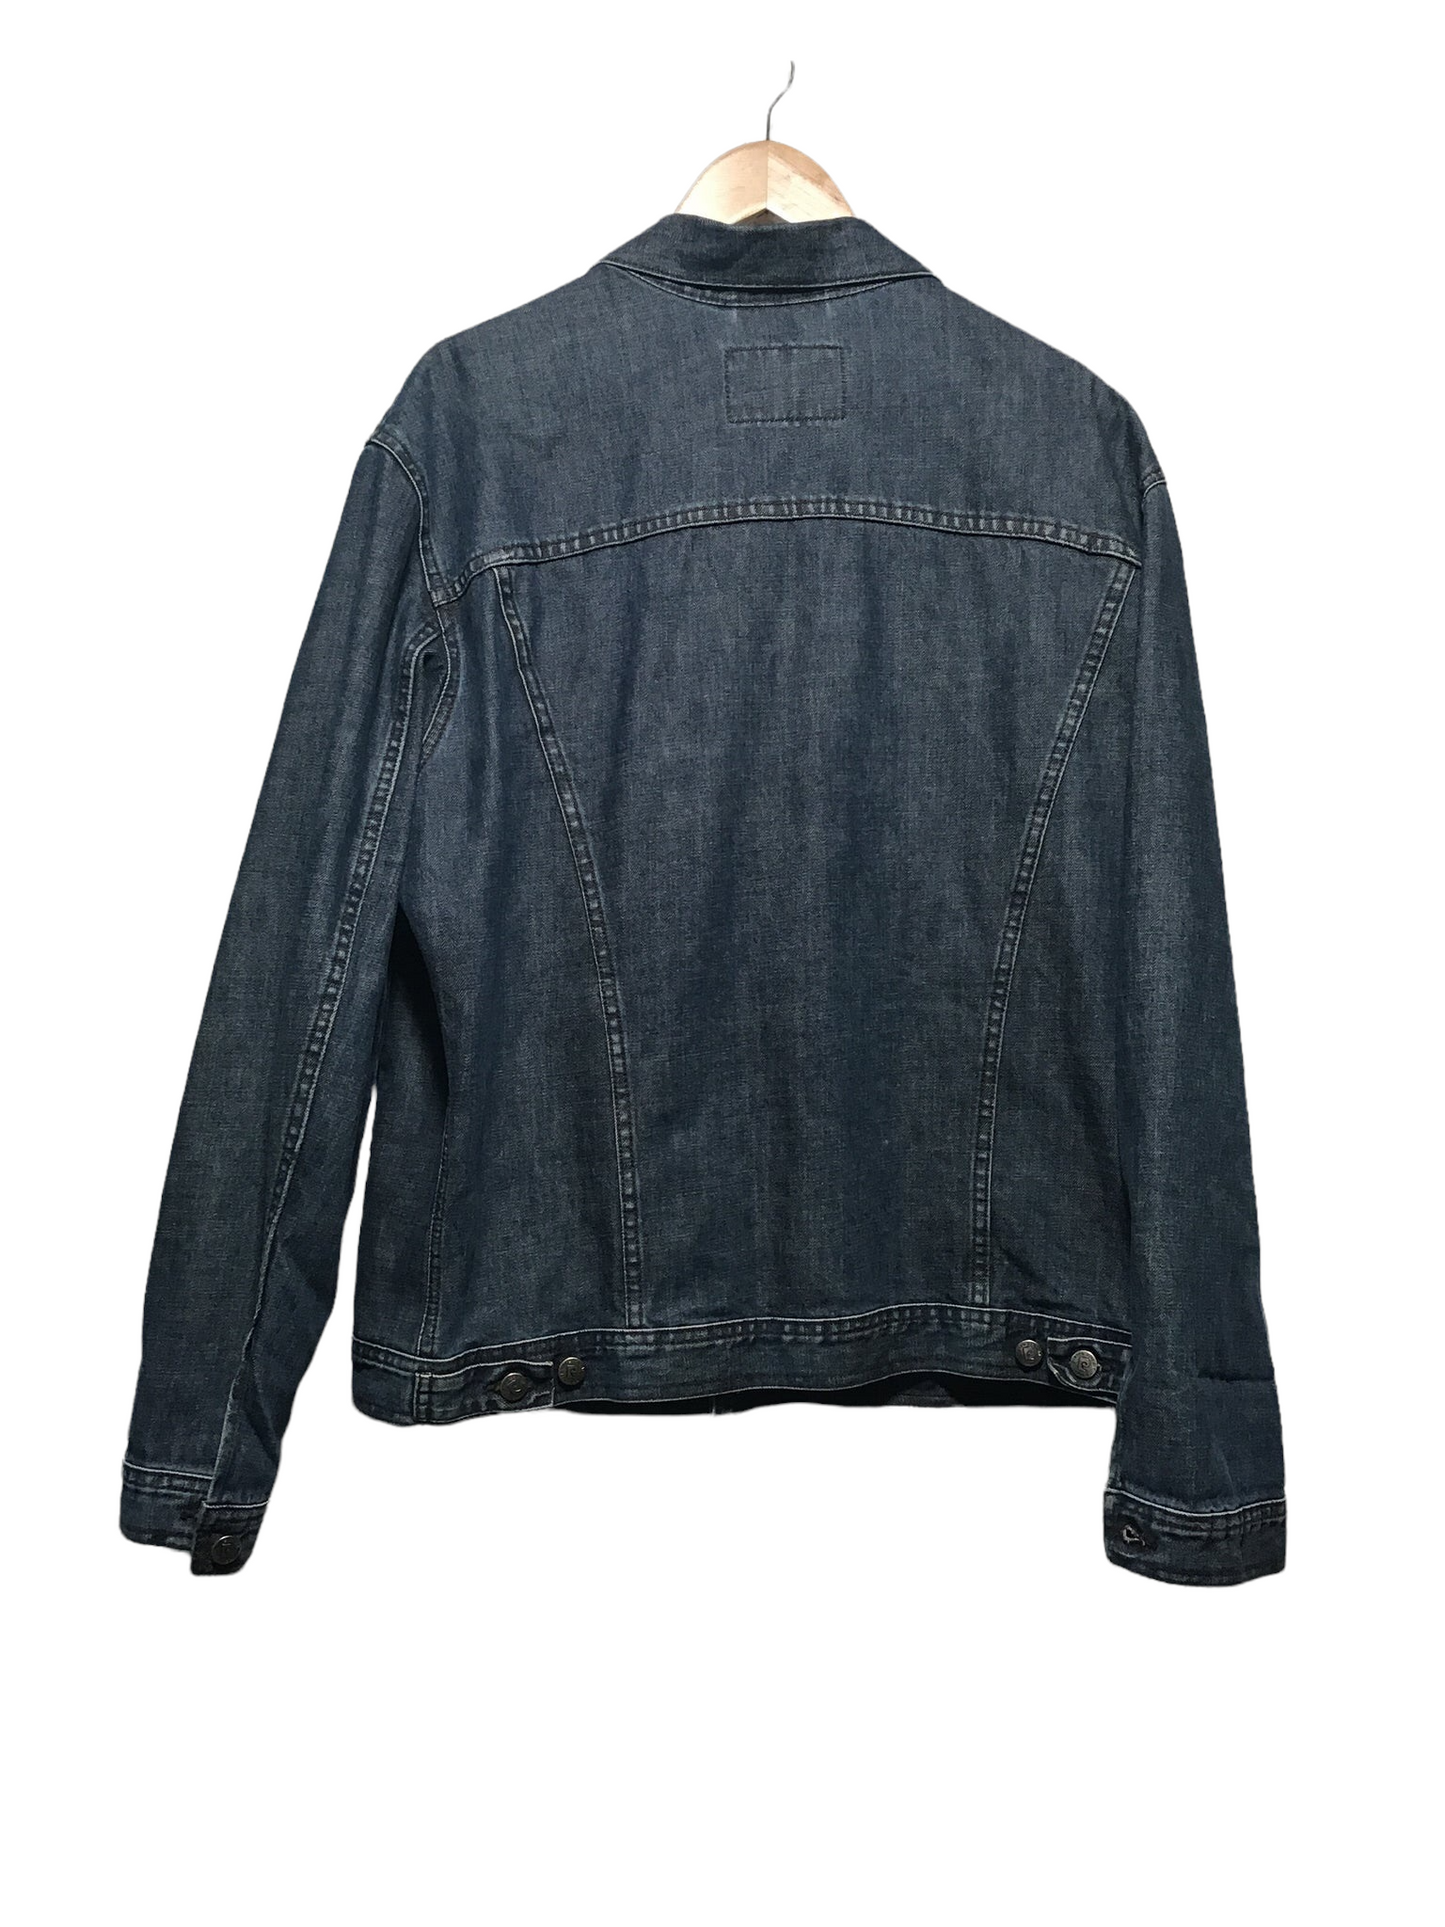 Pierre Cardin Denim Jacket (Size L)